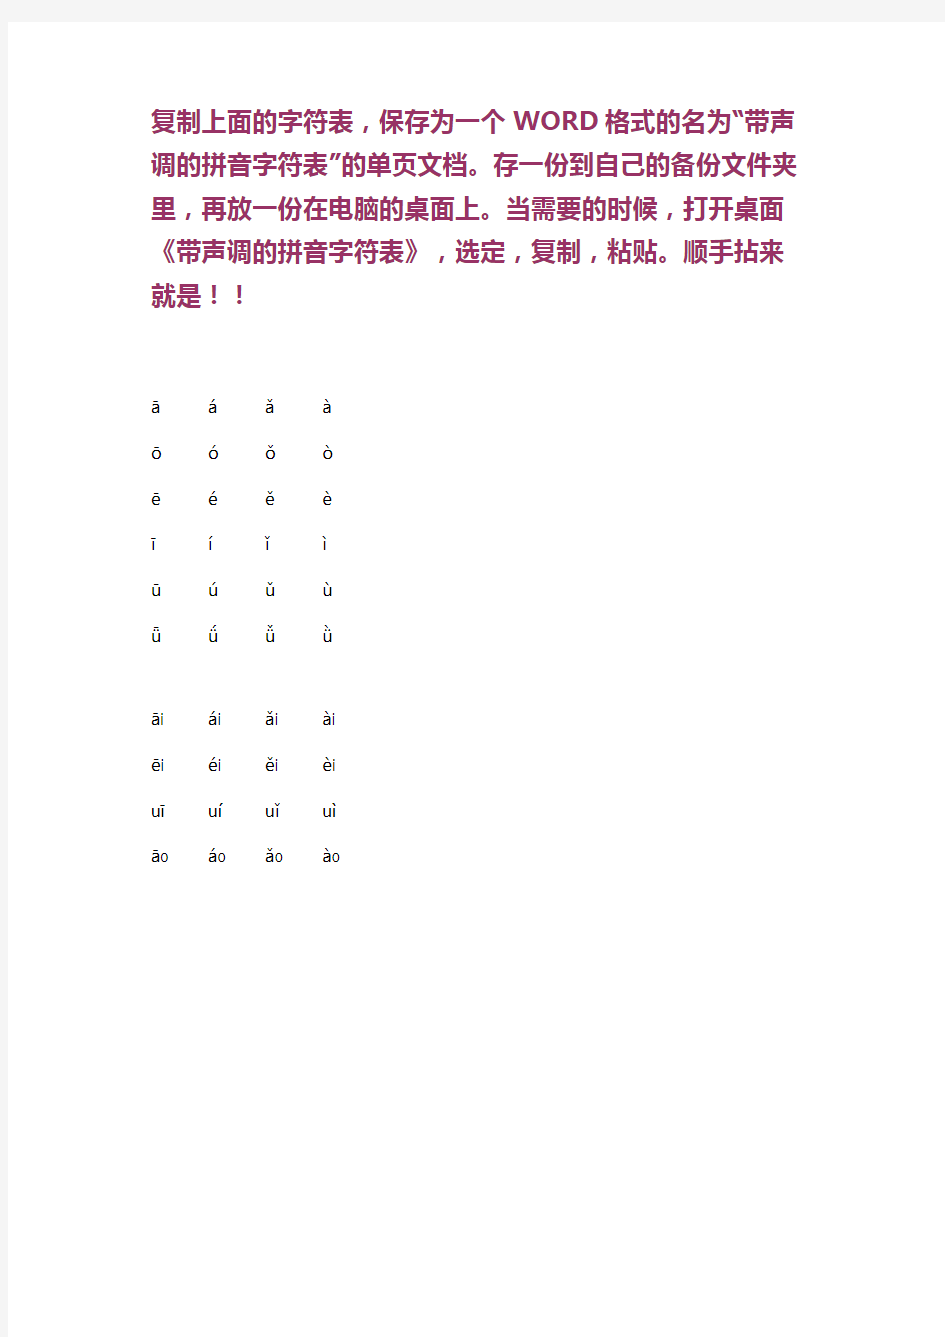 带声调的汉语拼音字符表